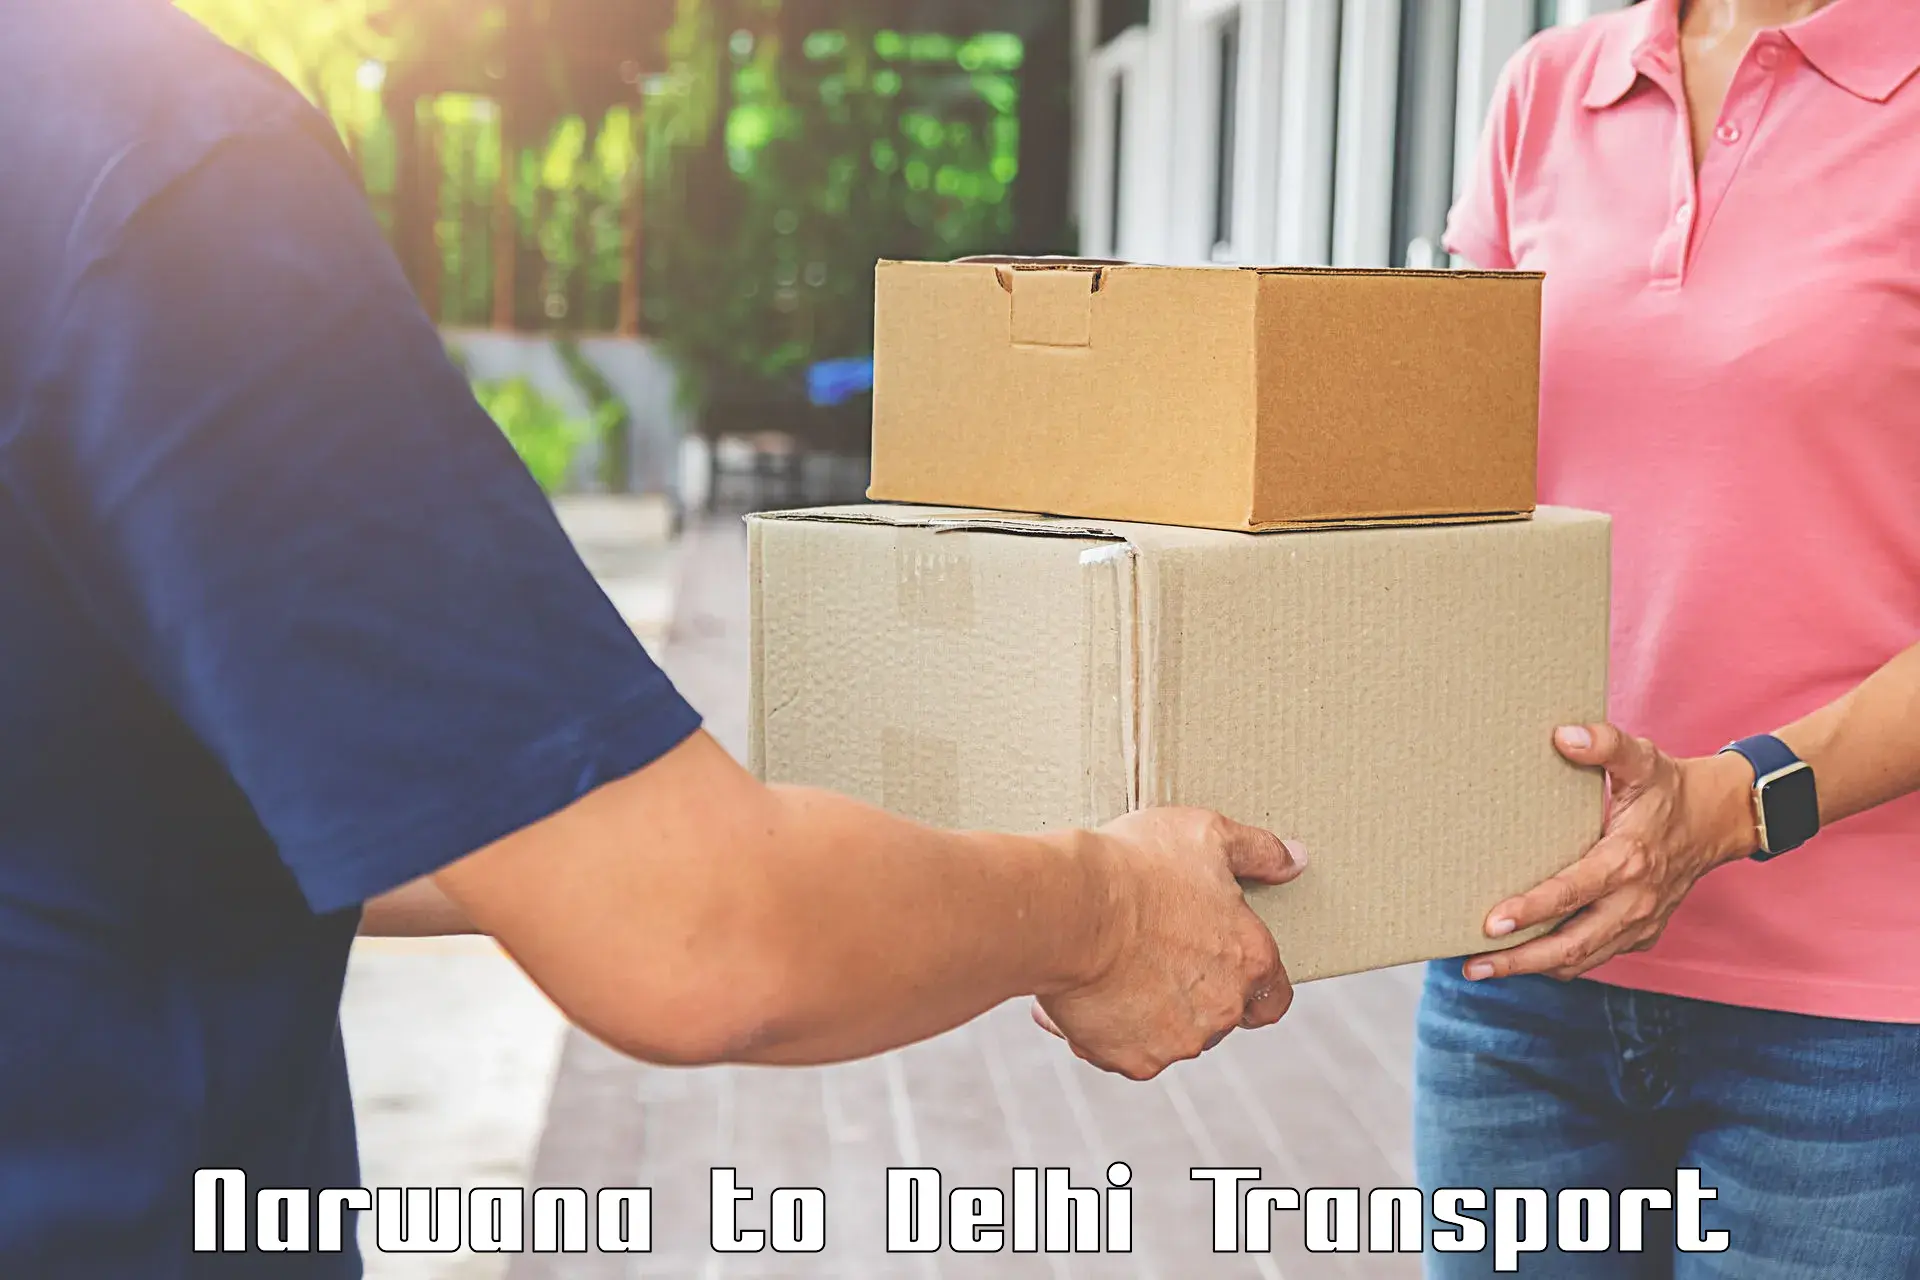 Parcel transport services Narwana to Jamia Millia Islamia New Delhi